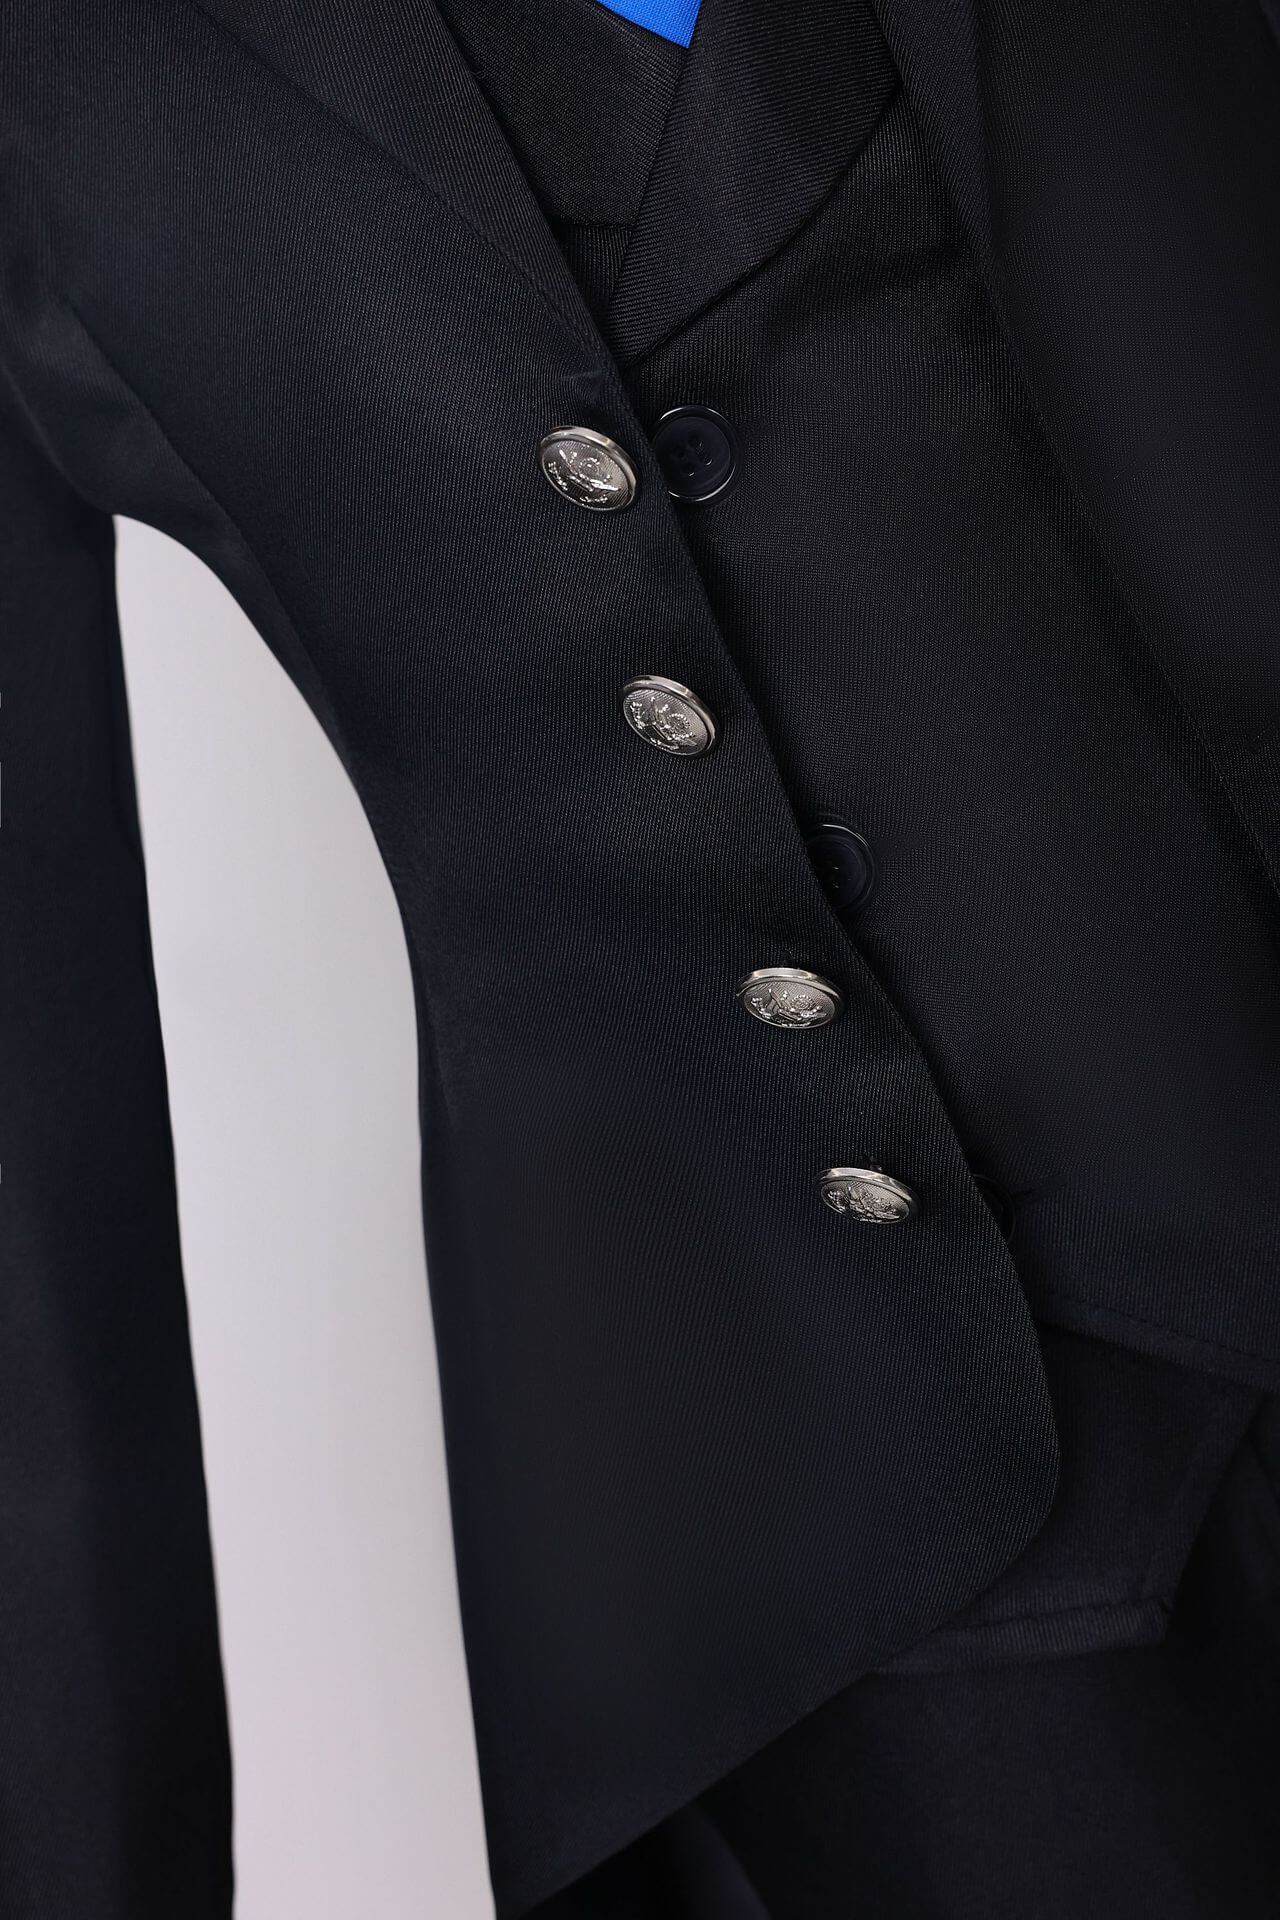 Adult Ciel Phantomhive Costume Black Uniform Suit Cosplay Outfit